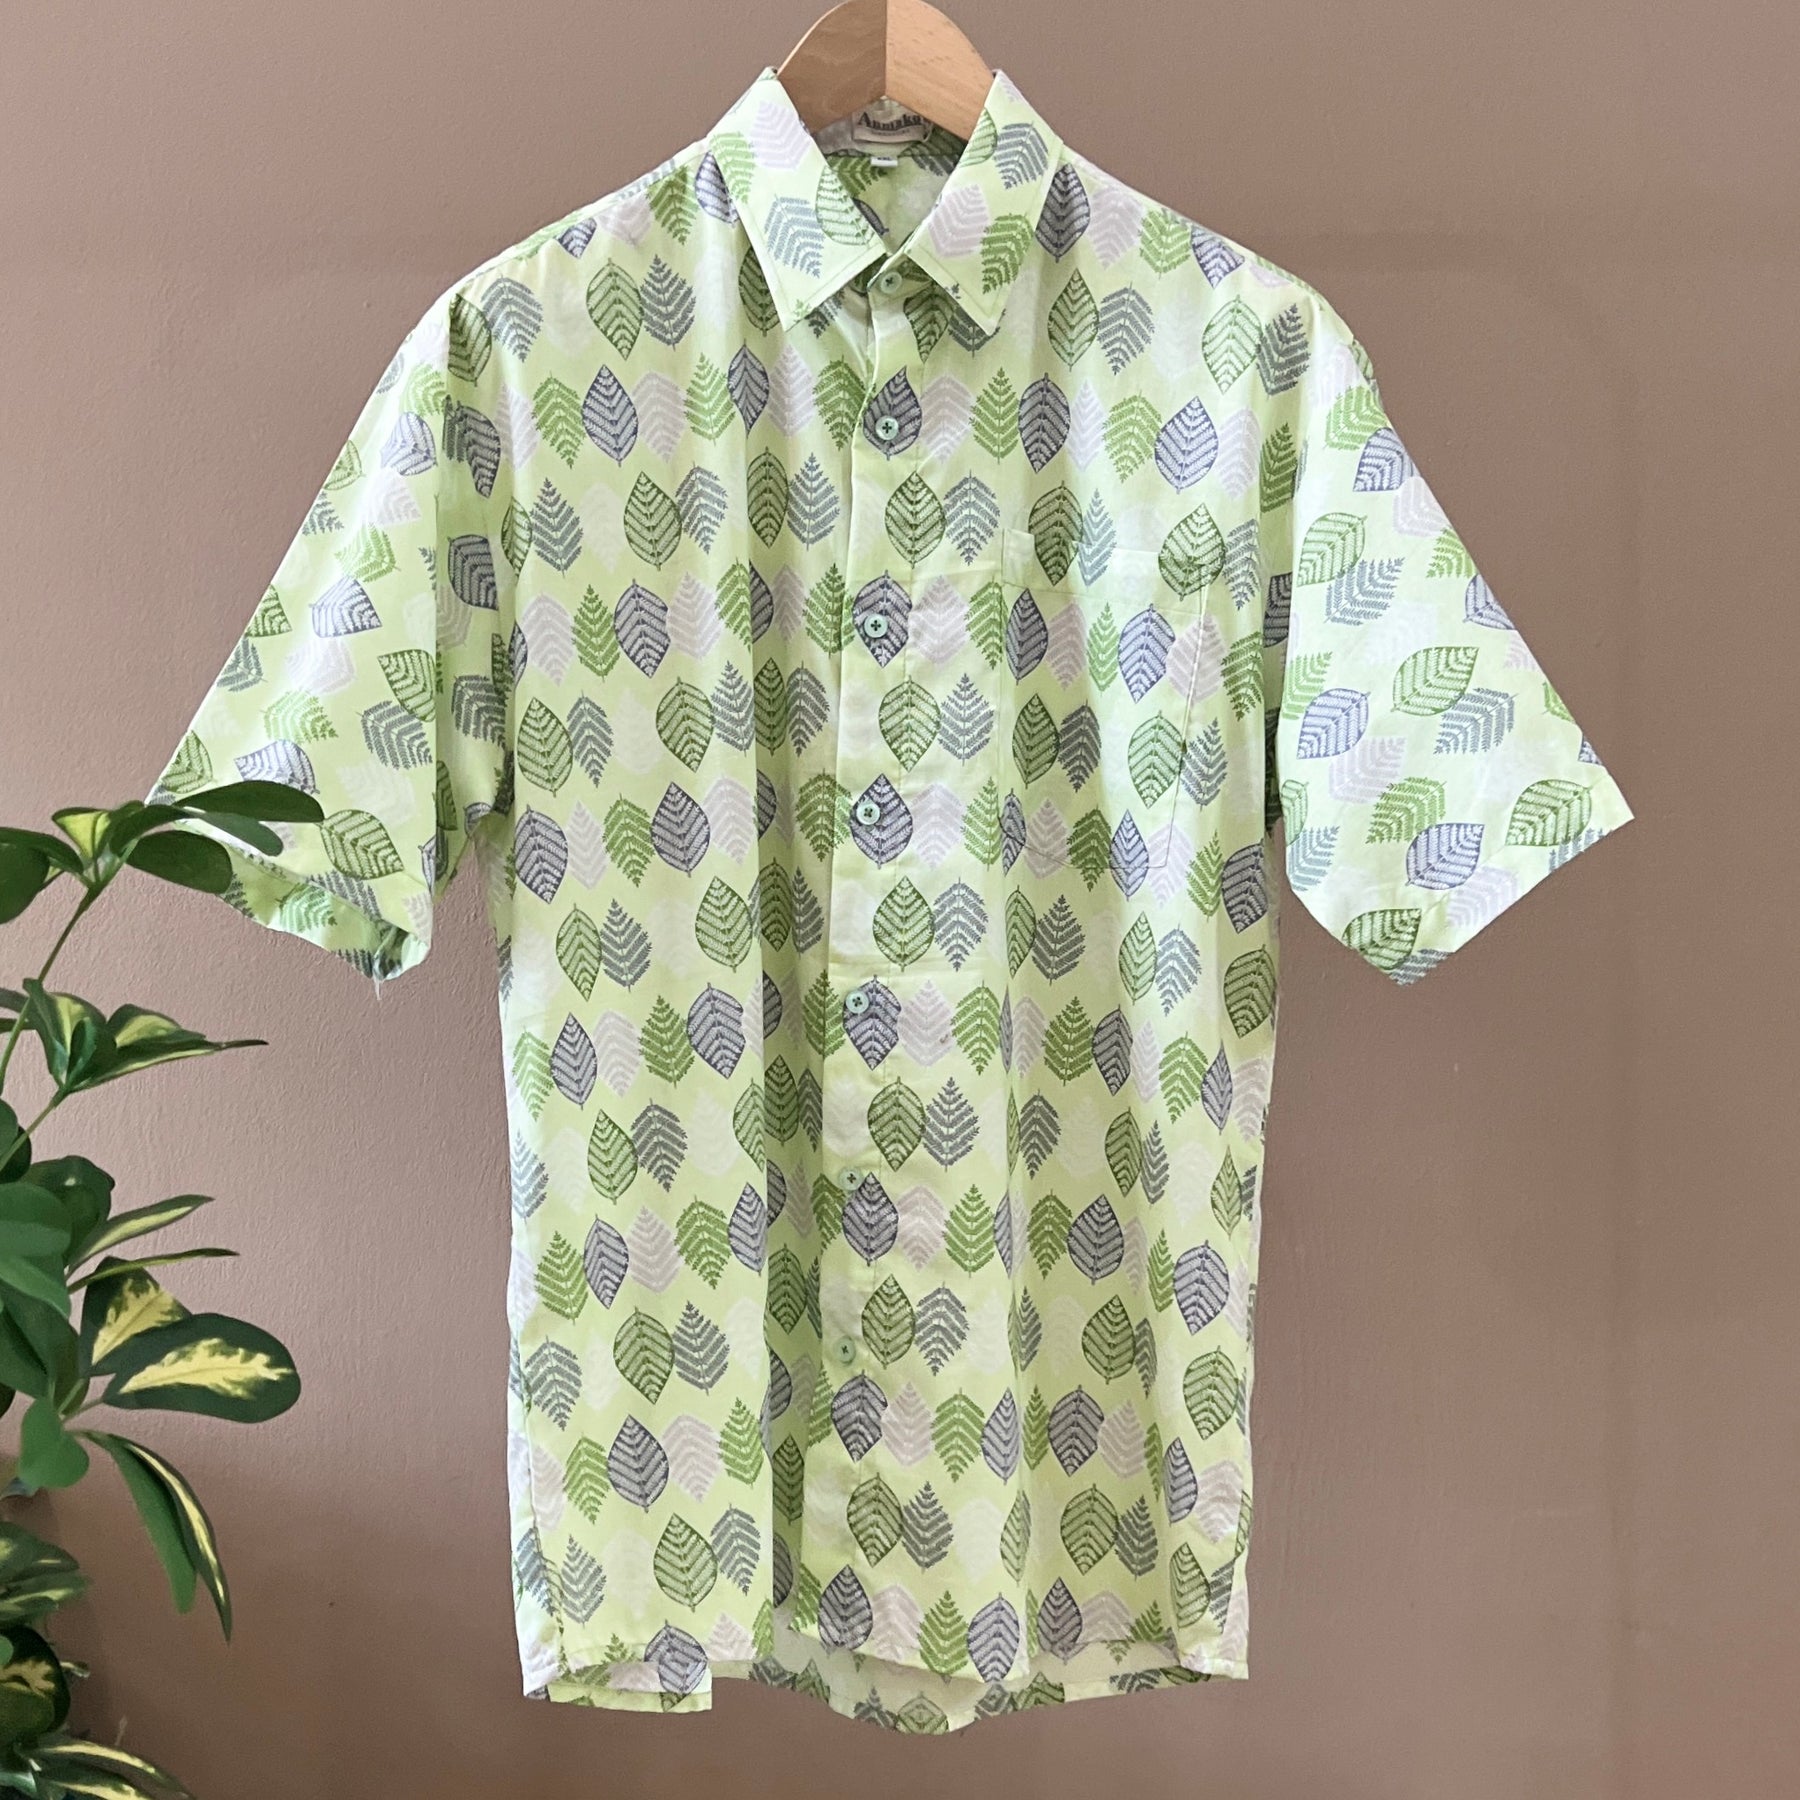 Japanese Cotton Men's Shirt - XXL